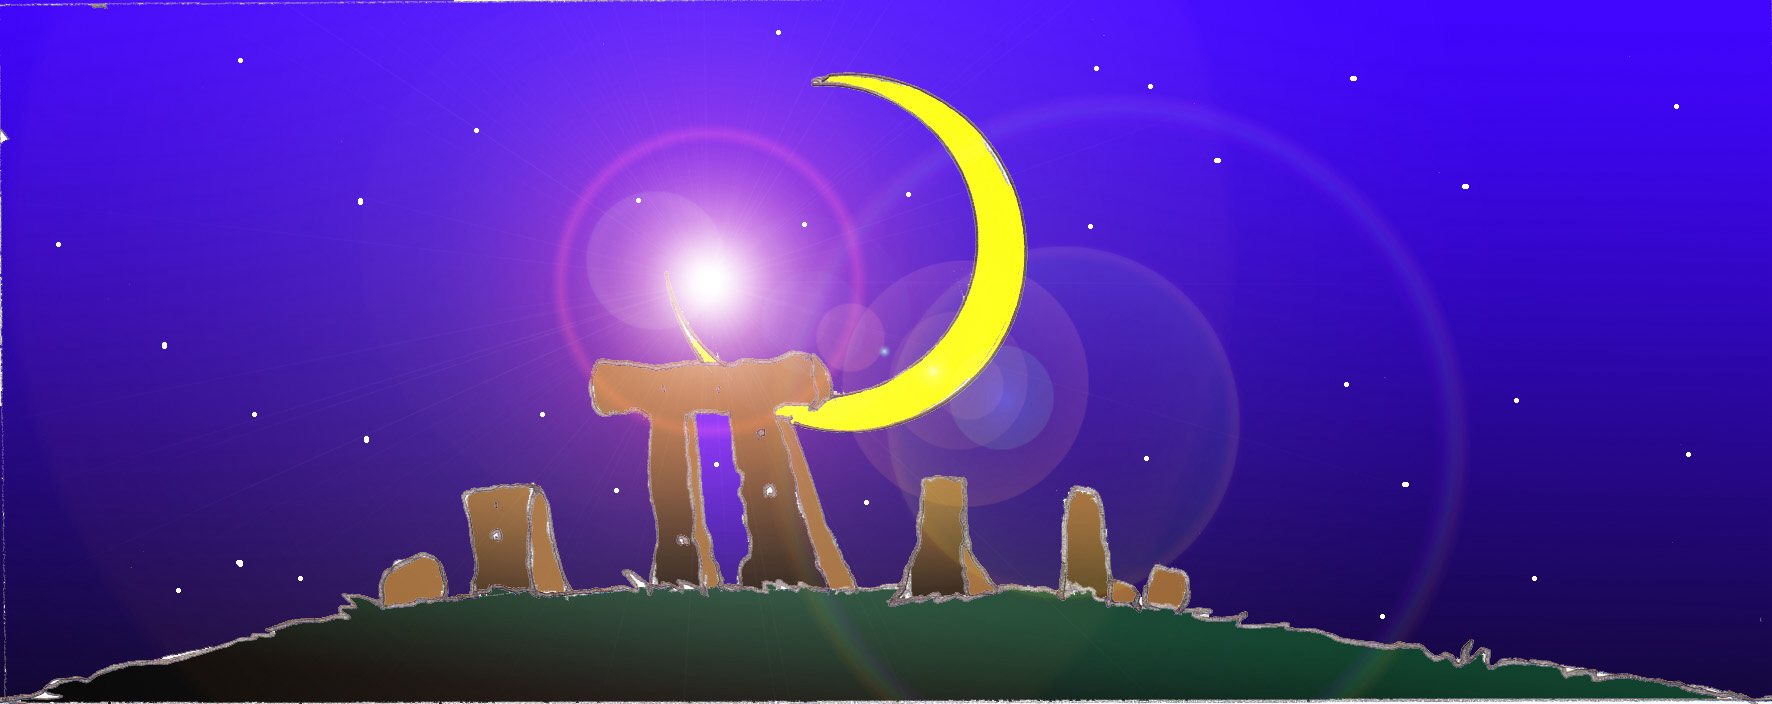 Immagine notturna di alcuni ruderi (Per leggerne la descrizione proseguire nel link). Si vedono alcuni ruderi, pietre sovrapposte, in un campo illuminato dalla luna.